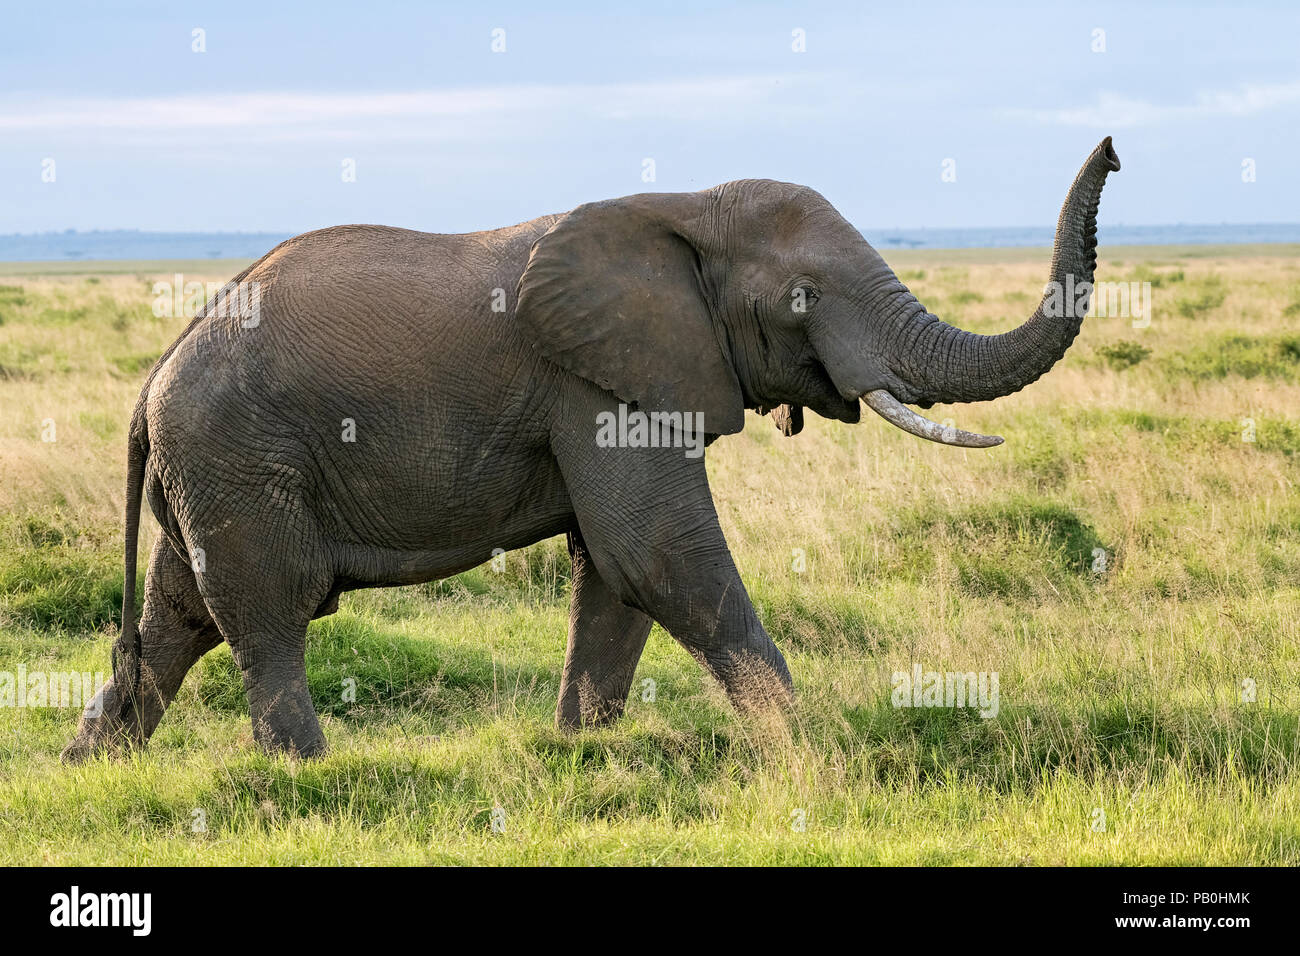 L'éléphant africain (Loxodonta africana), le Parc national Amboseli Kenya Afrique de l'Est Banque D'Images